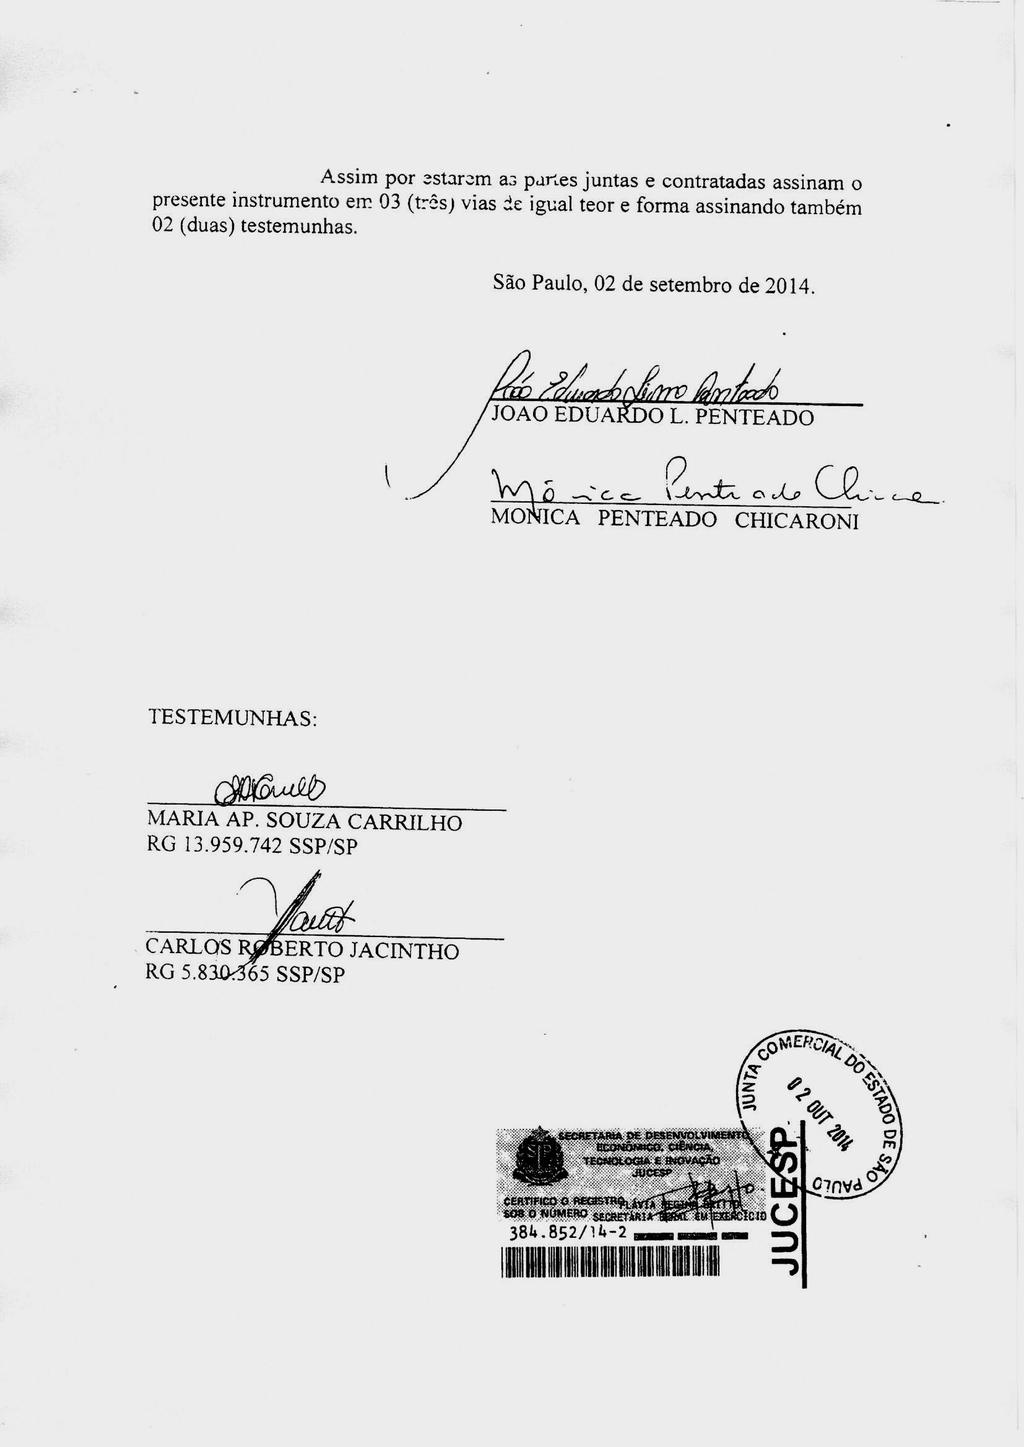 fls. 38 Este documento é cópia do original, assinado digitalmente por EDUARDO BIRKMAN e Tribunal de Justica do Estado de Sao Paulo, protocolado em 02/12/2016 às 12:04, sob o número